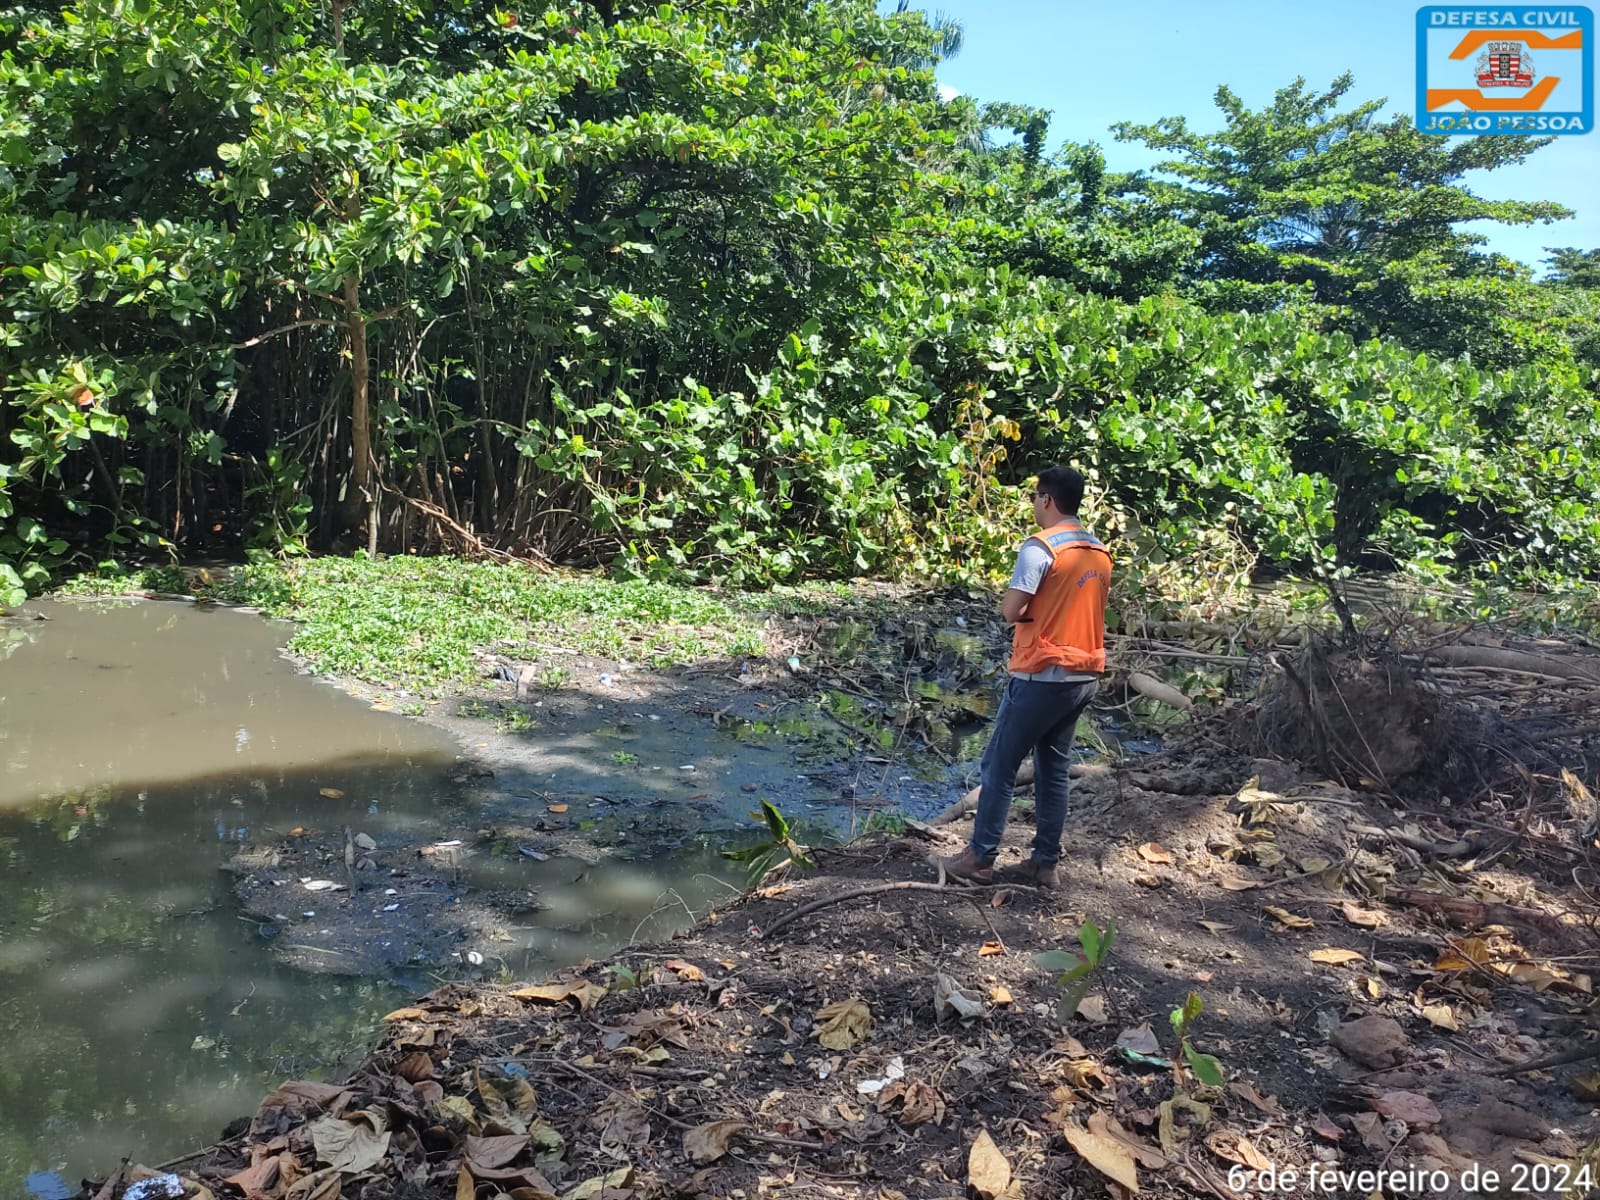 Defesa Civil começa serviço de limpeza e desassoreamento em novos trechos do Rio Jaguaribe